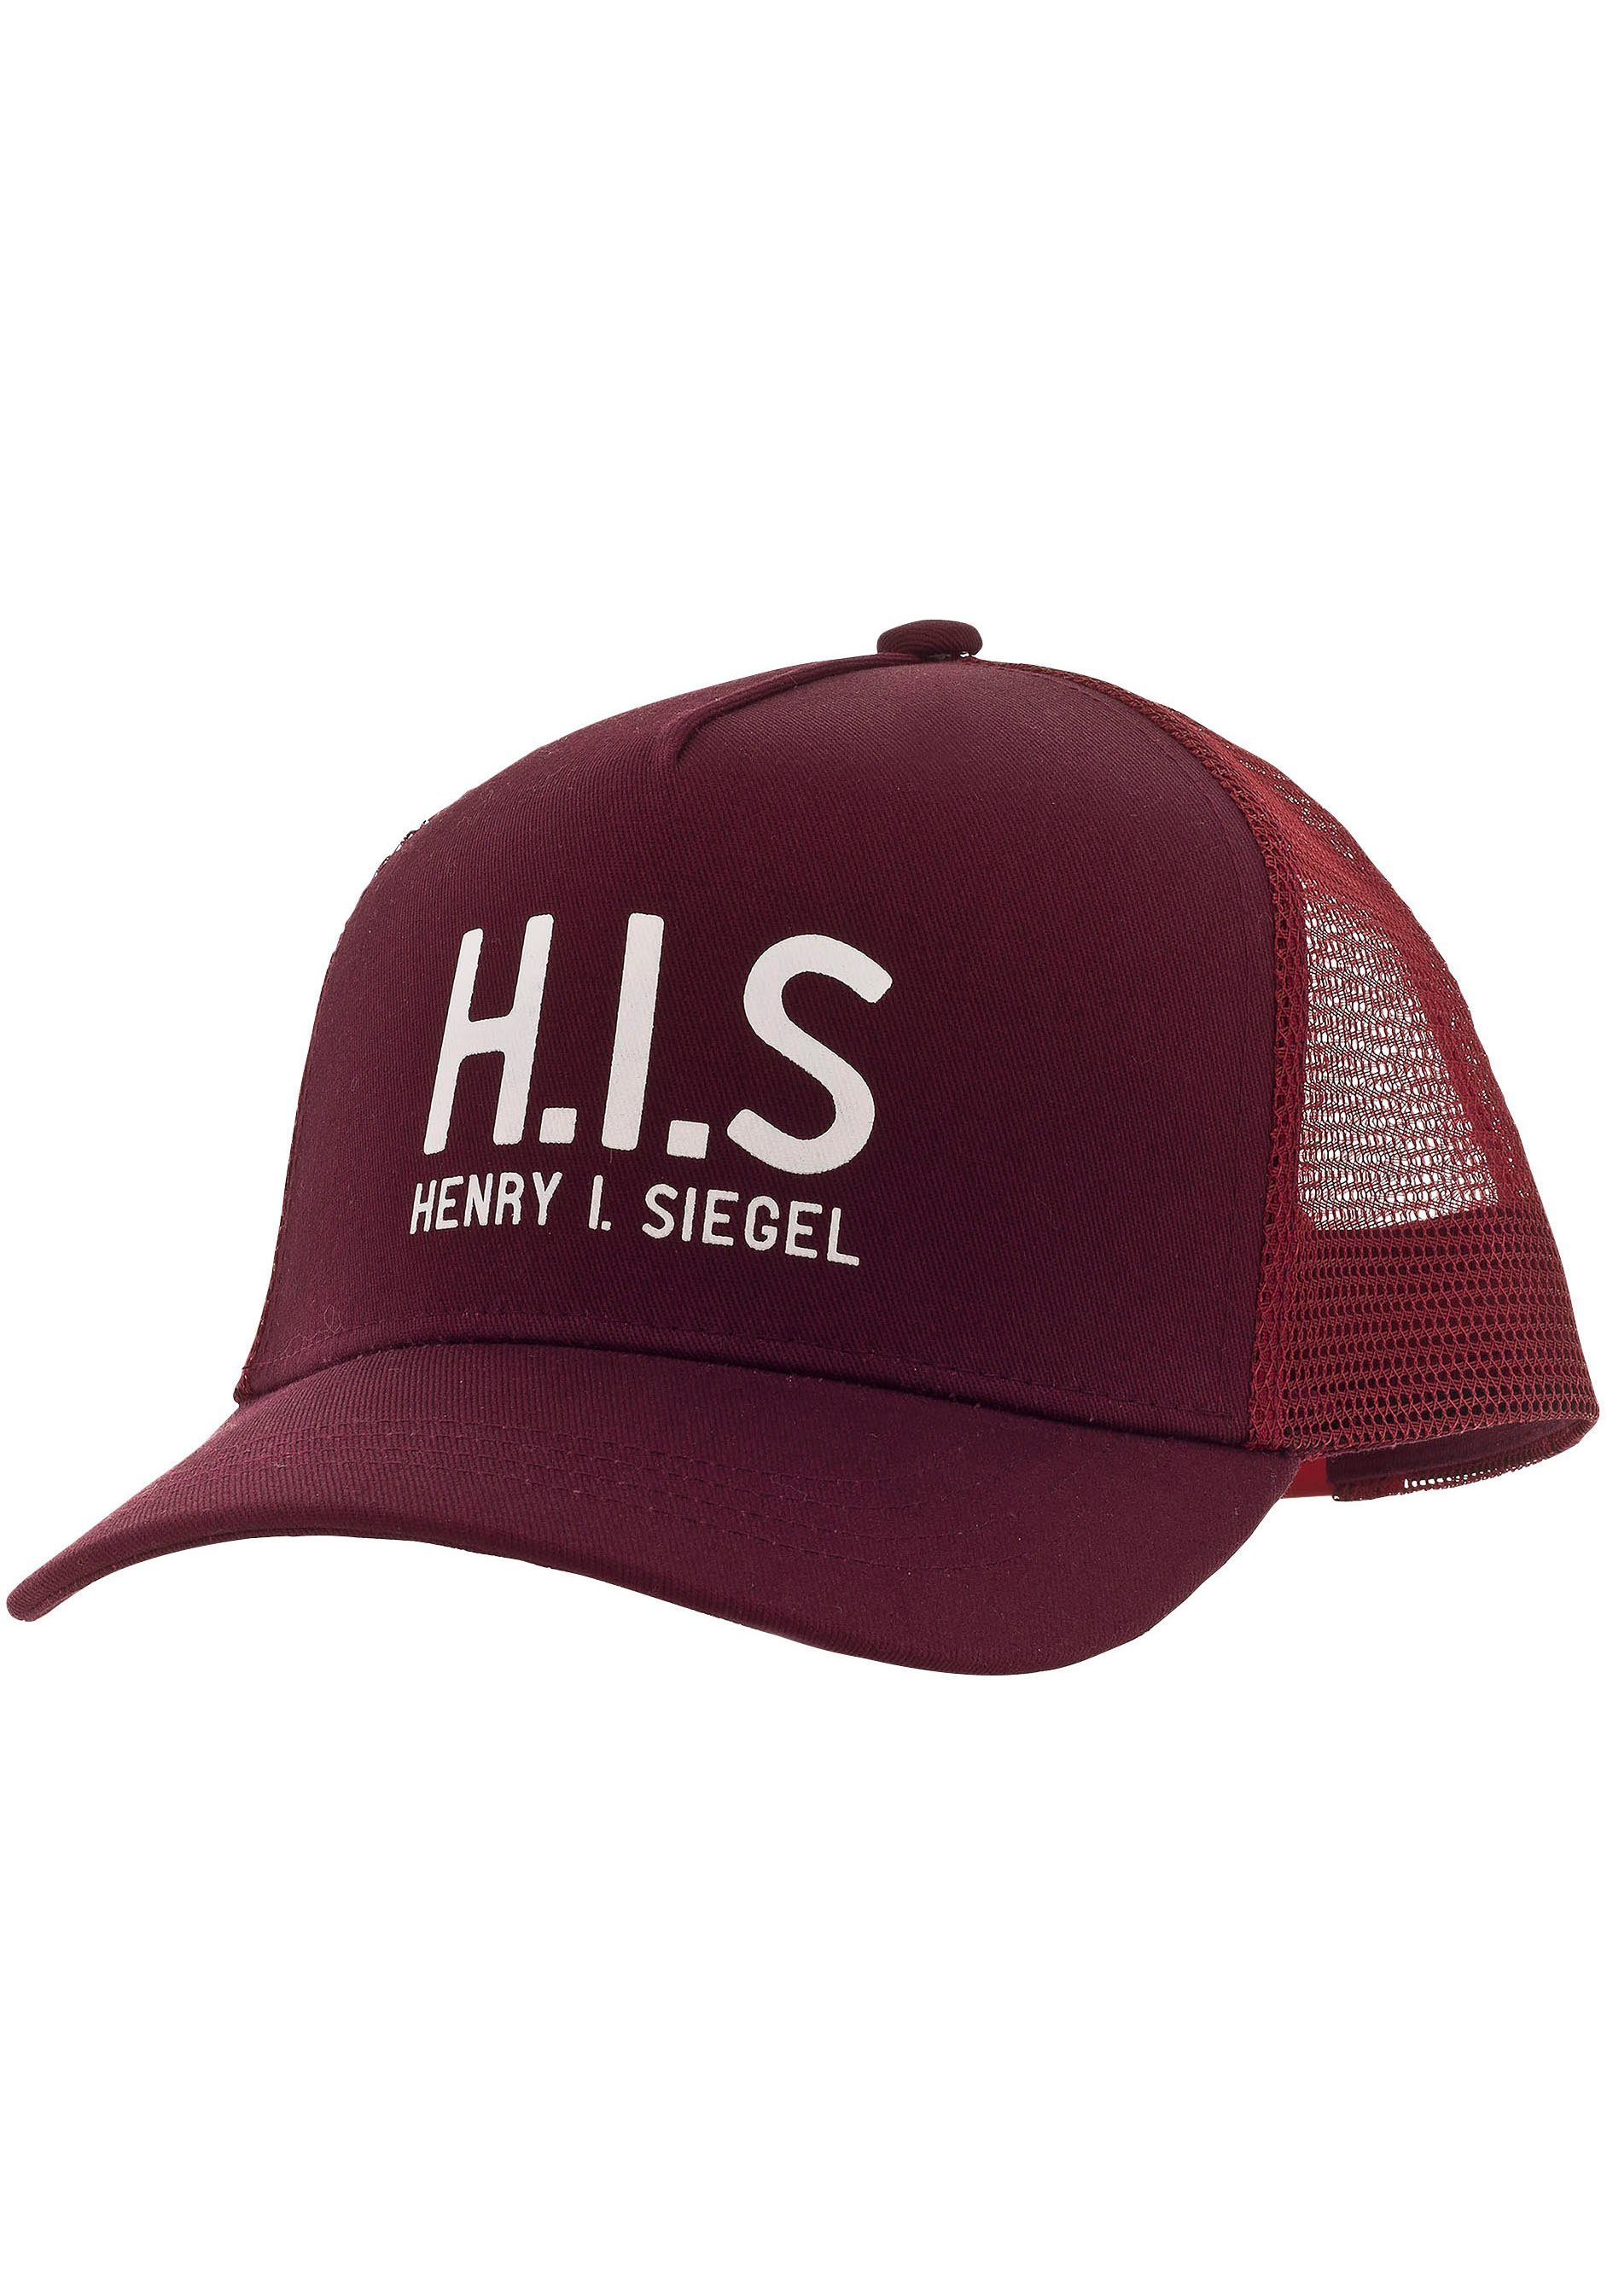 H.I.S Baseball Cap Mesh-Cap mit H.I.S.-Print bordeaux | Baseball Caps